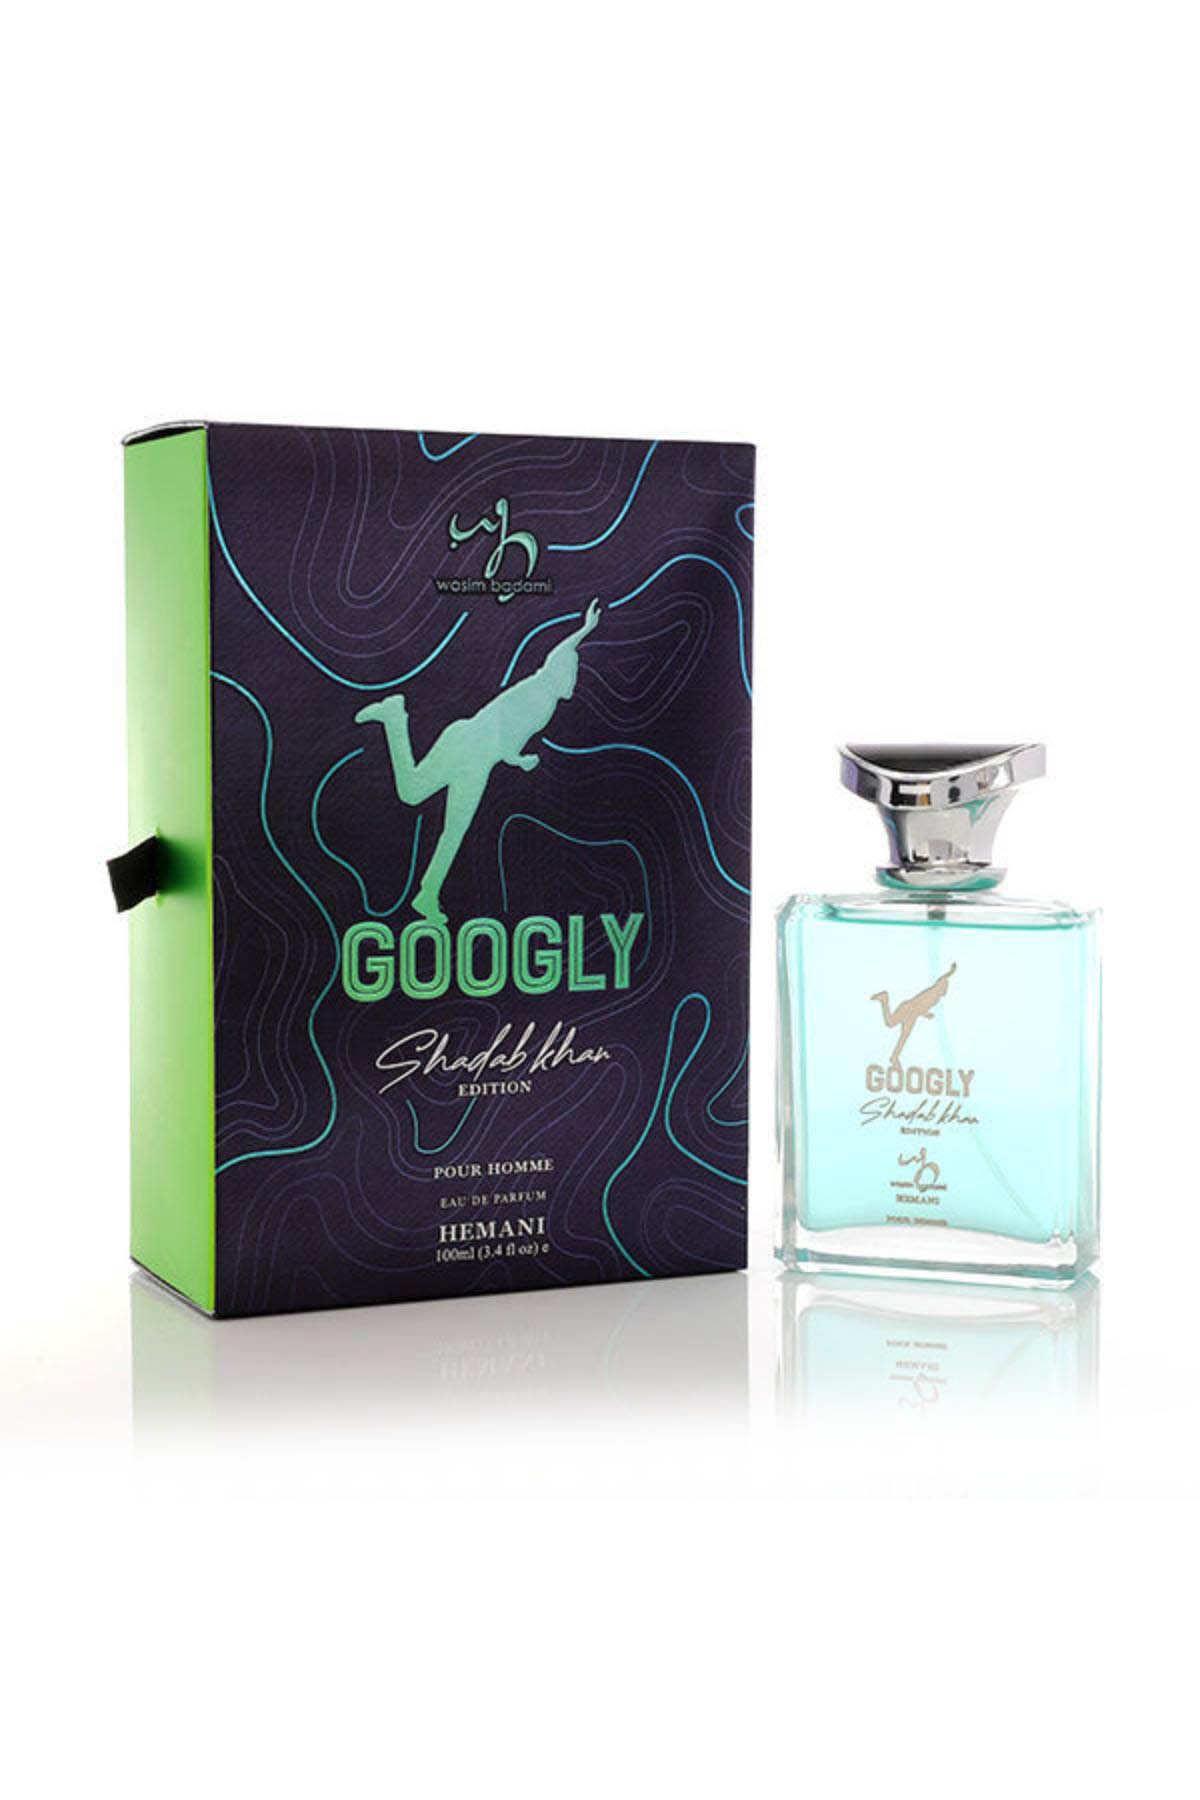 Googly Perfume 100Ml - Shadab Khan Edition